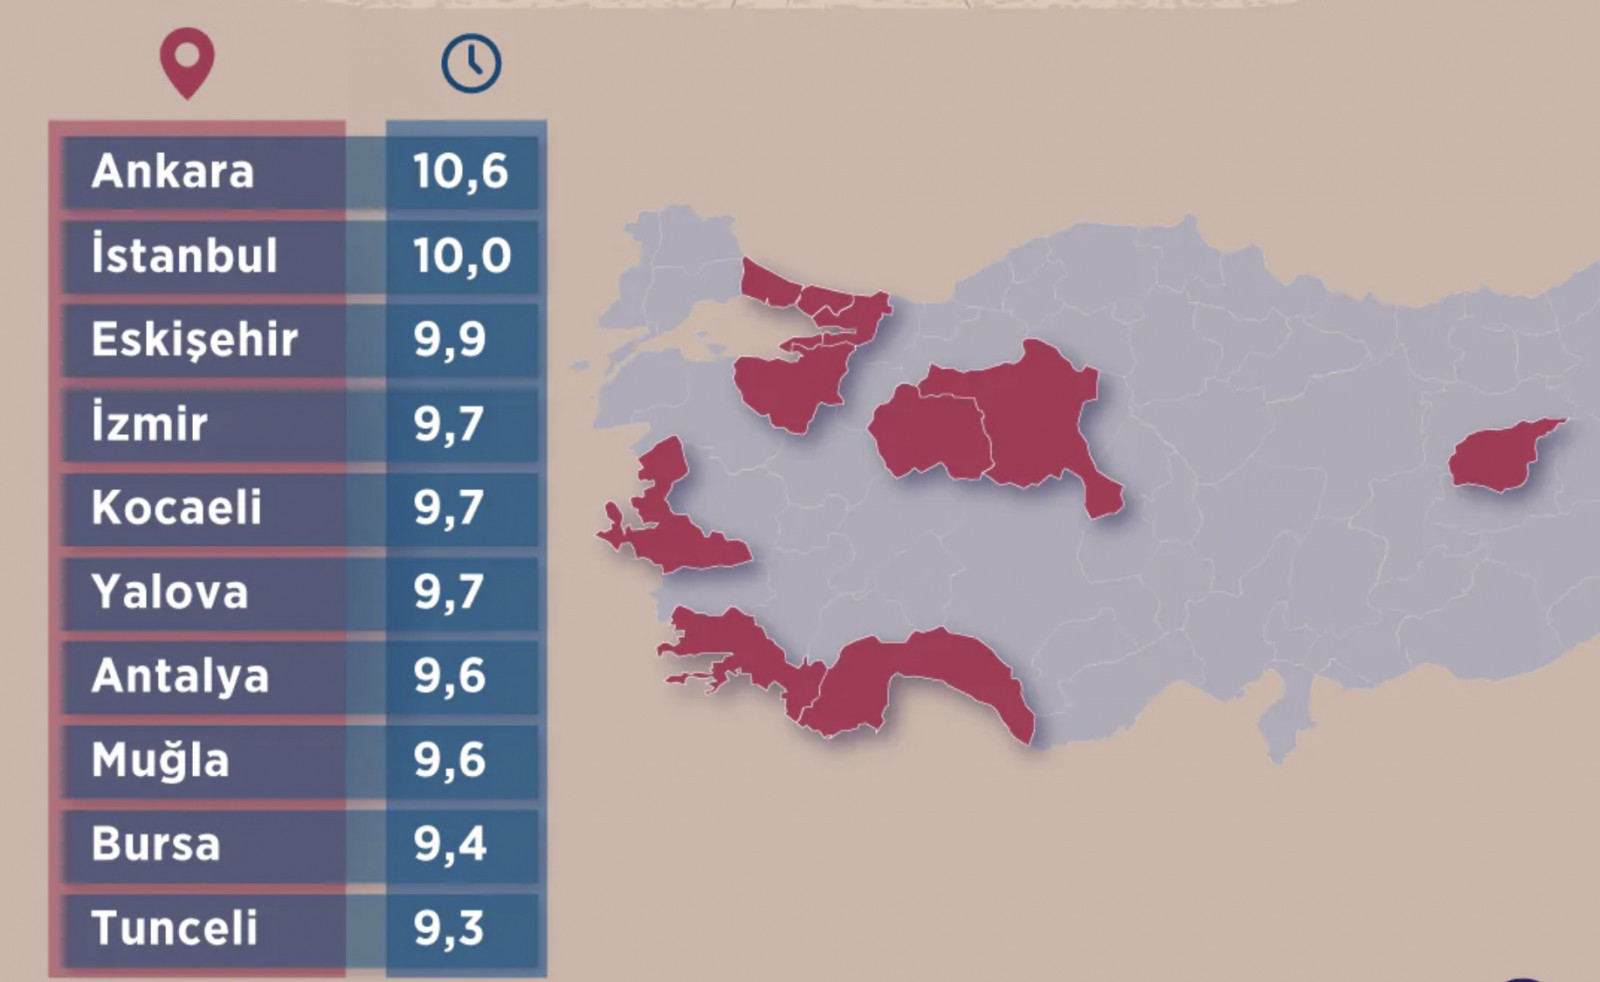 Türkiye'de ortalama eğitim süresinin en yüksek olduğu iller